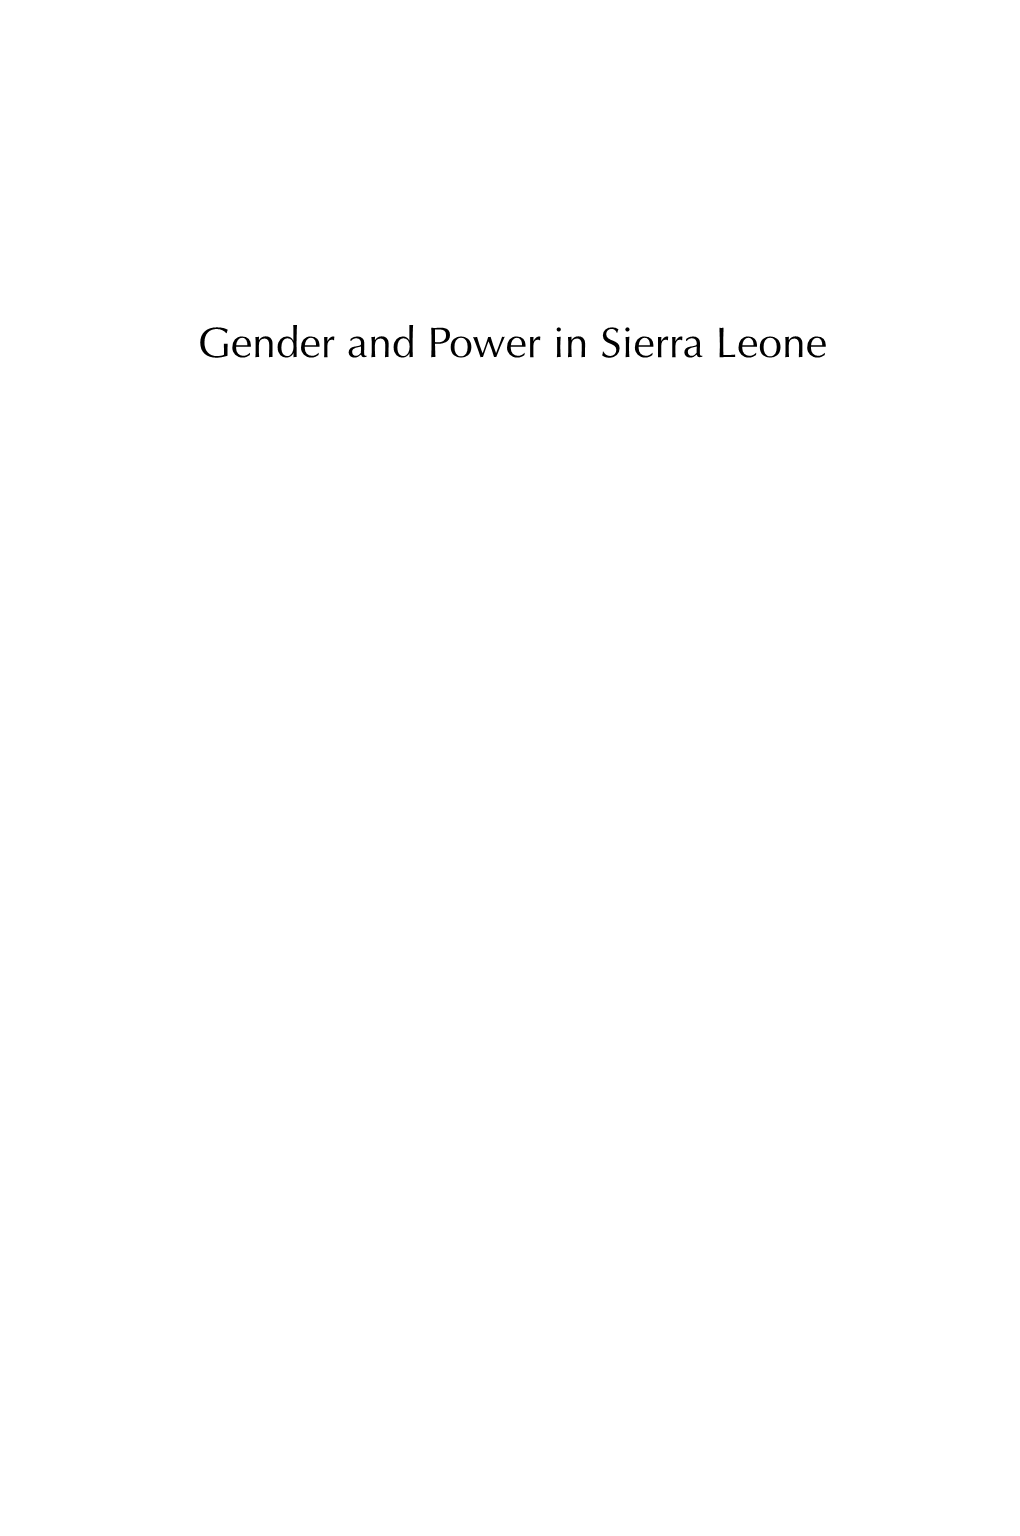 Gender and Power in Sierra Leone EZ — — —&54!�*!